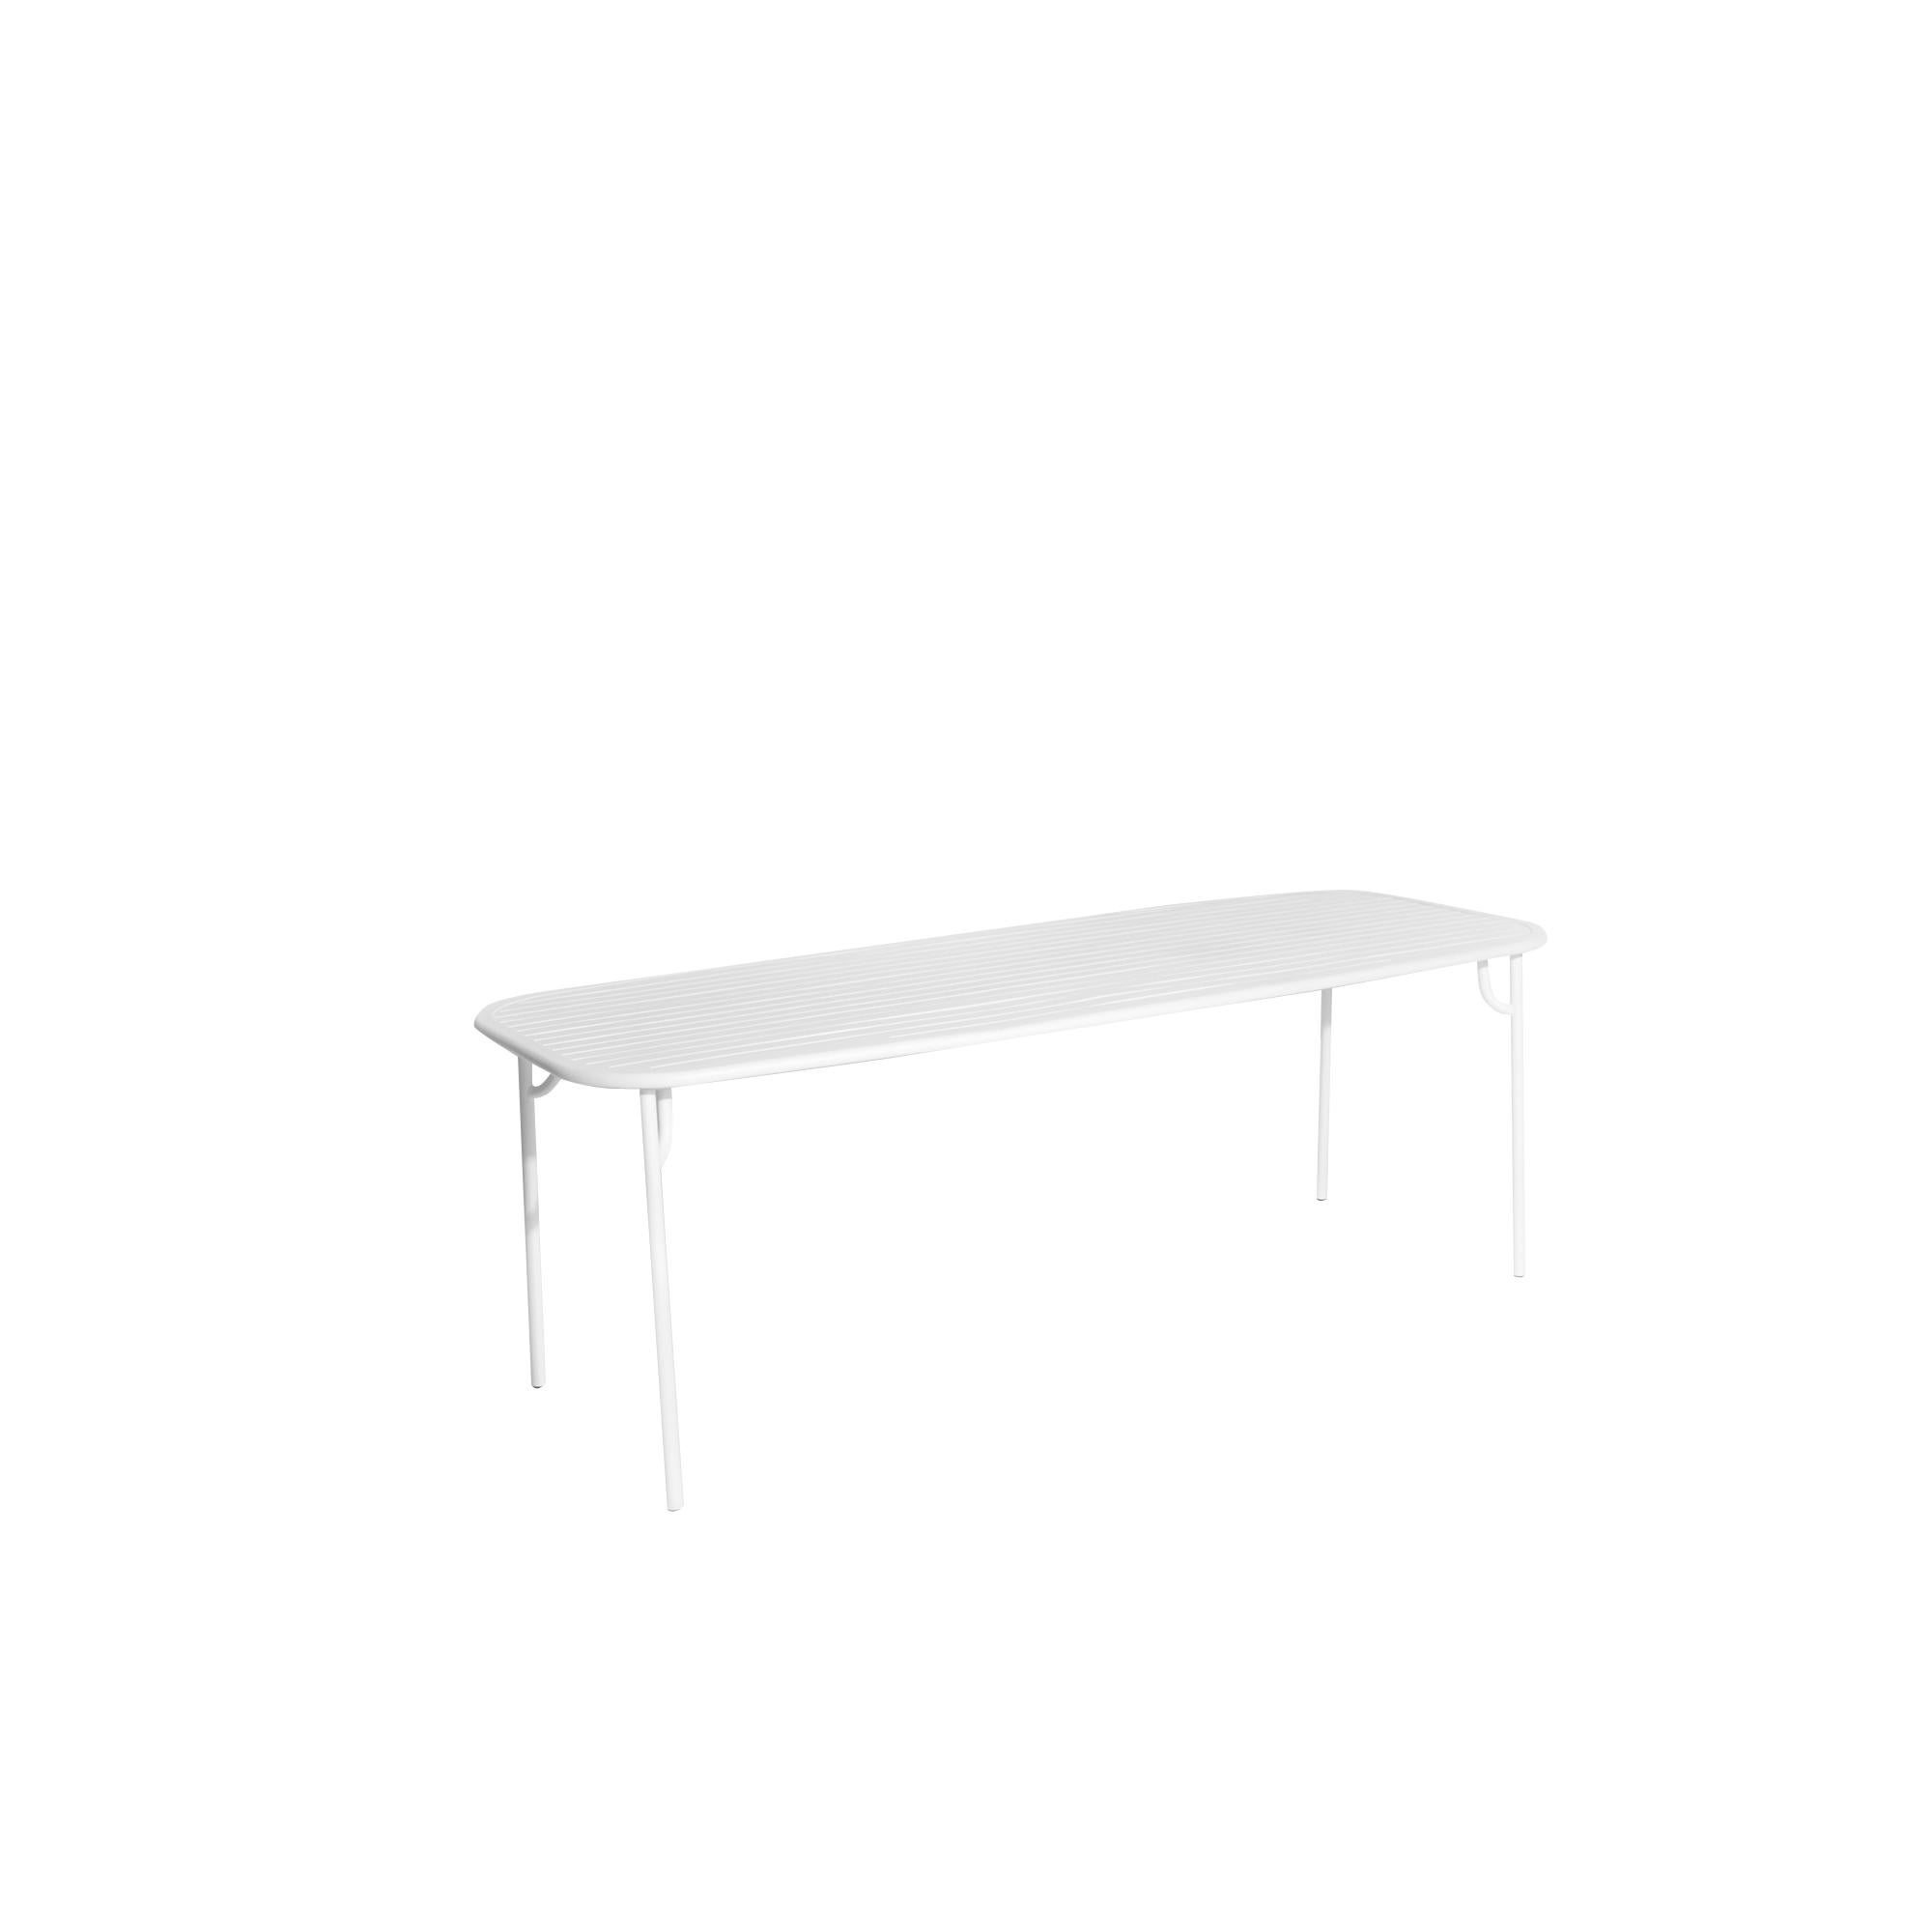 Petite Friture Week-End Large Rectangular Dining Table in White Aluminium with Slats by Studio BrichetZiegler, 2017

Die Week-End-Kollektion besteht aus einer kompletten Palette von Außenmöbeln mit mattierter Epoxidharzlackierung mit